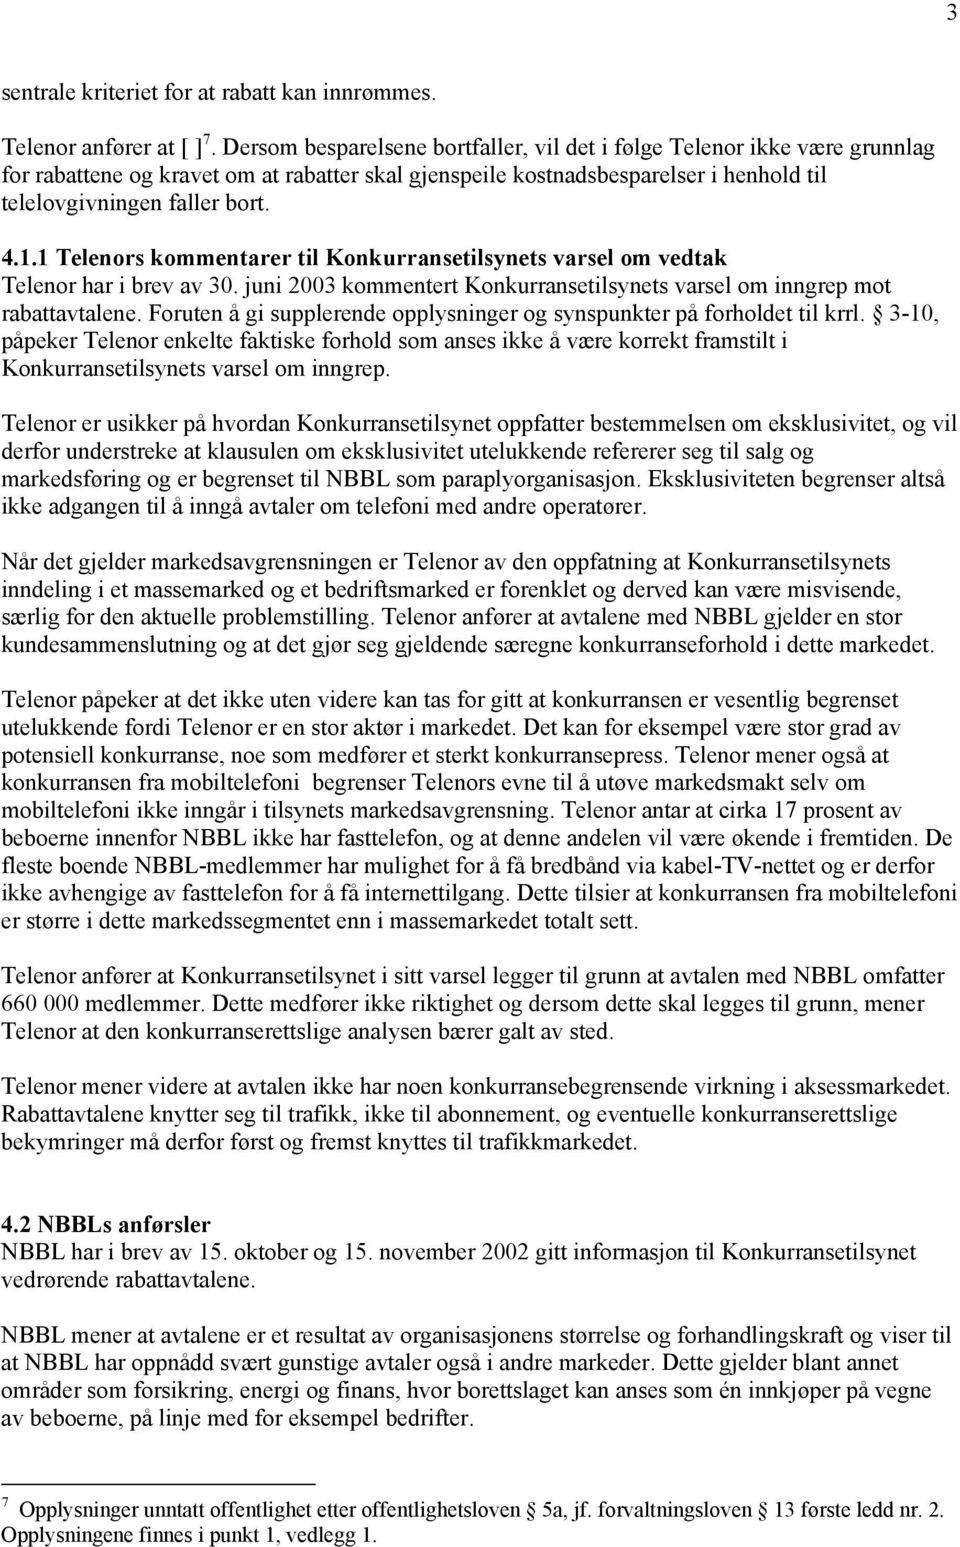 1 Telenors kommentarer til Konkurransetilsynets varsel om vedtak Telenor har i brev av 30. juni 2003 kommentert Konkurransetilsynets varsel om inngrep mot rabattavtalene.